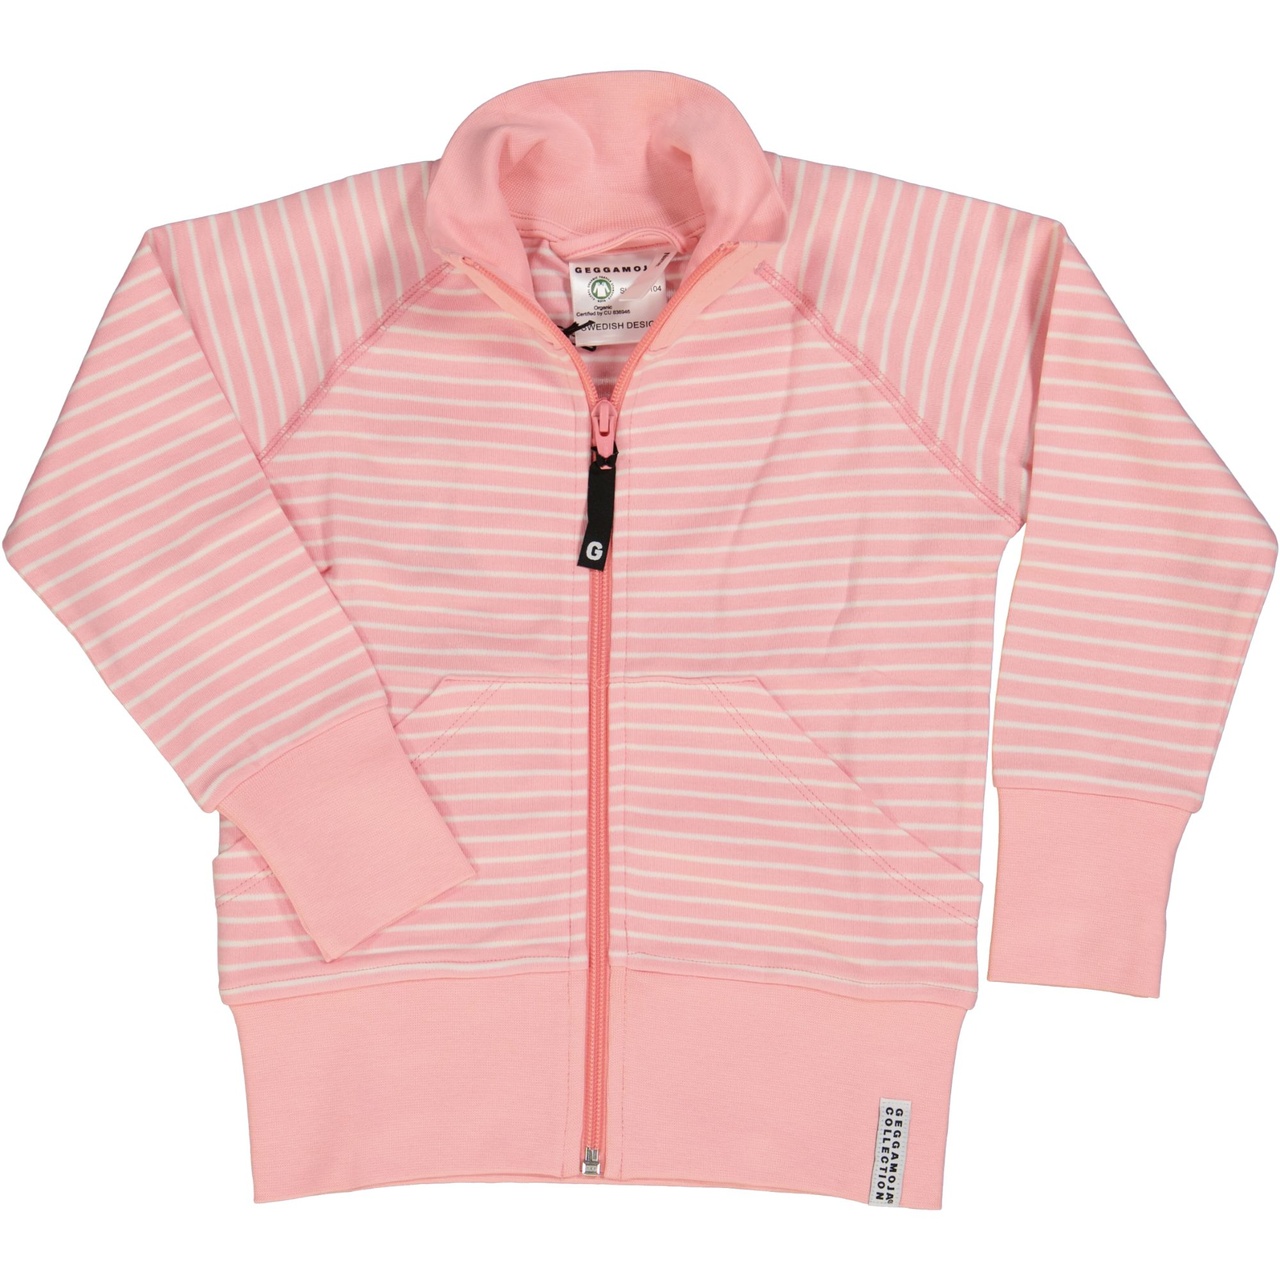 Classic Zipsweater Pink/white  170